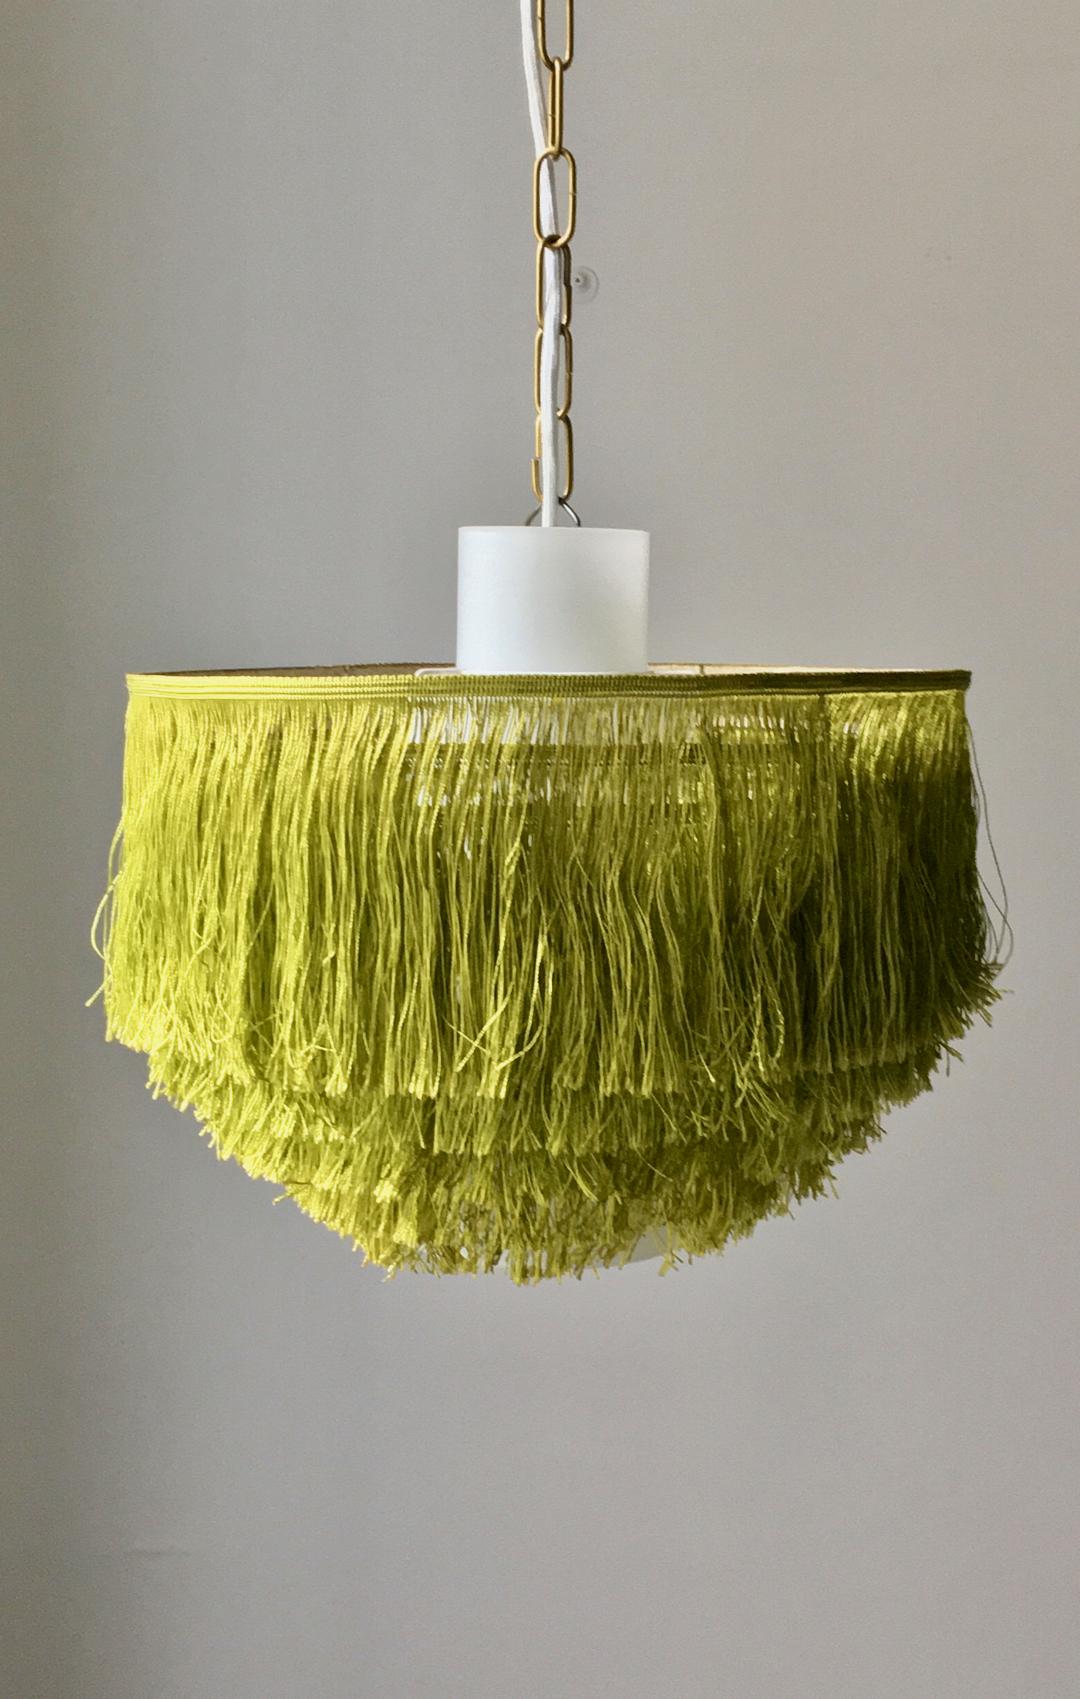 Lampe à frange en soie verte avec revêtement en verre de Hans-Agne Jakobsson, fabriquée par son entreprise à Markaryd, en Suède. Deux lumières disponibles, prix par pièce.

Les luminaires peuvent être suspendus au plafond (à l'aide de la boucle